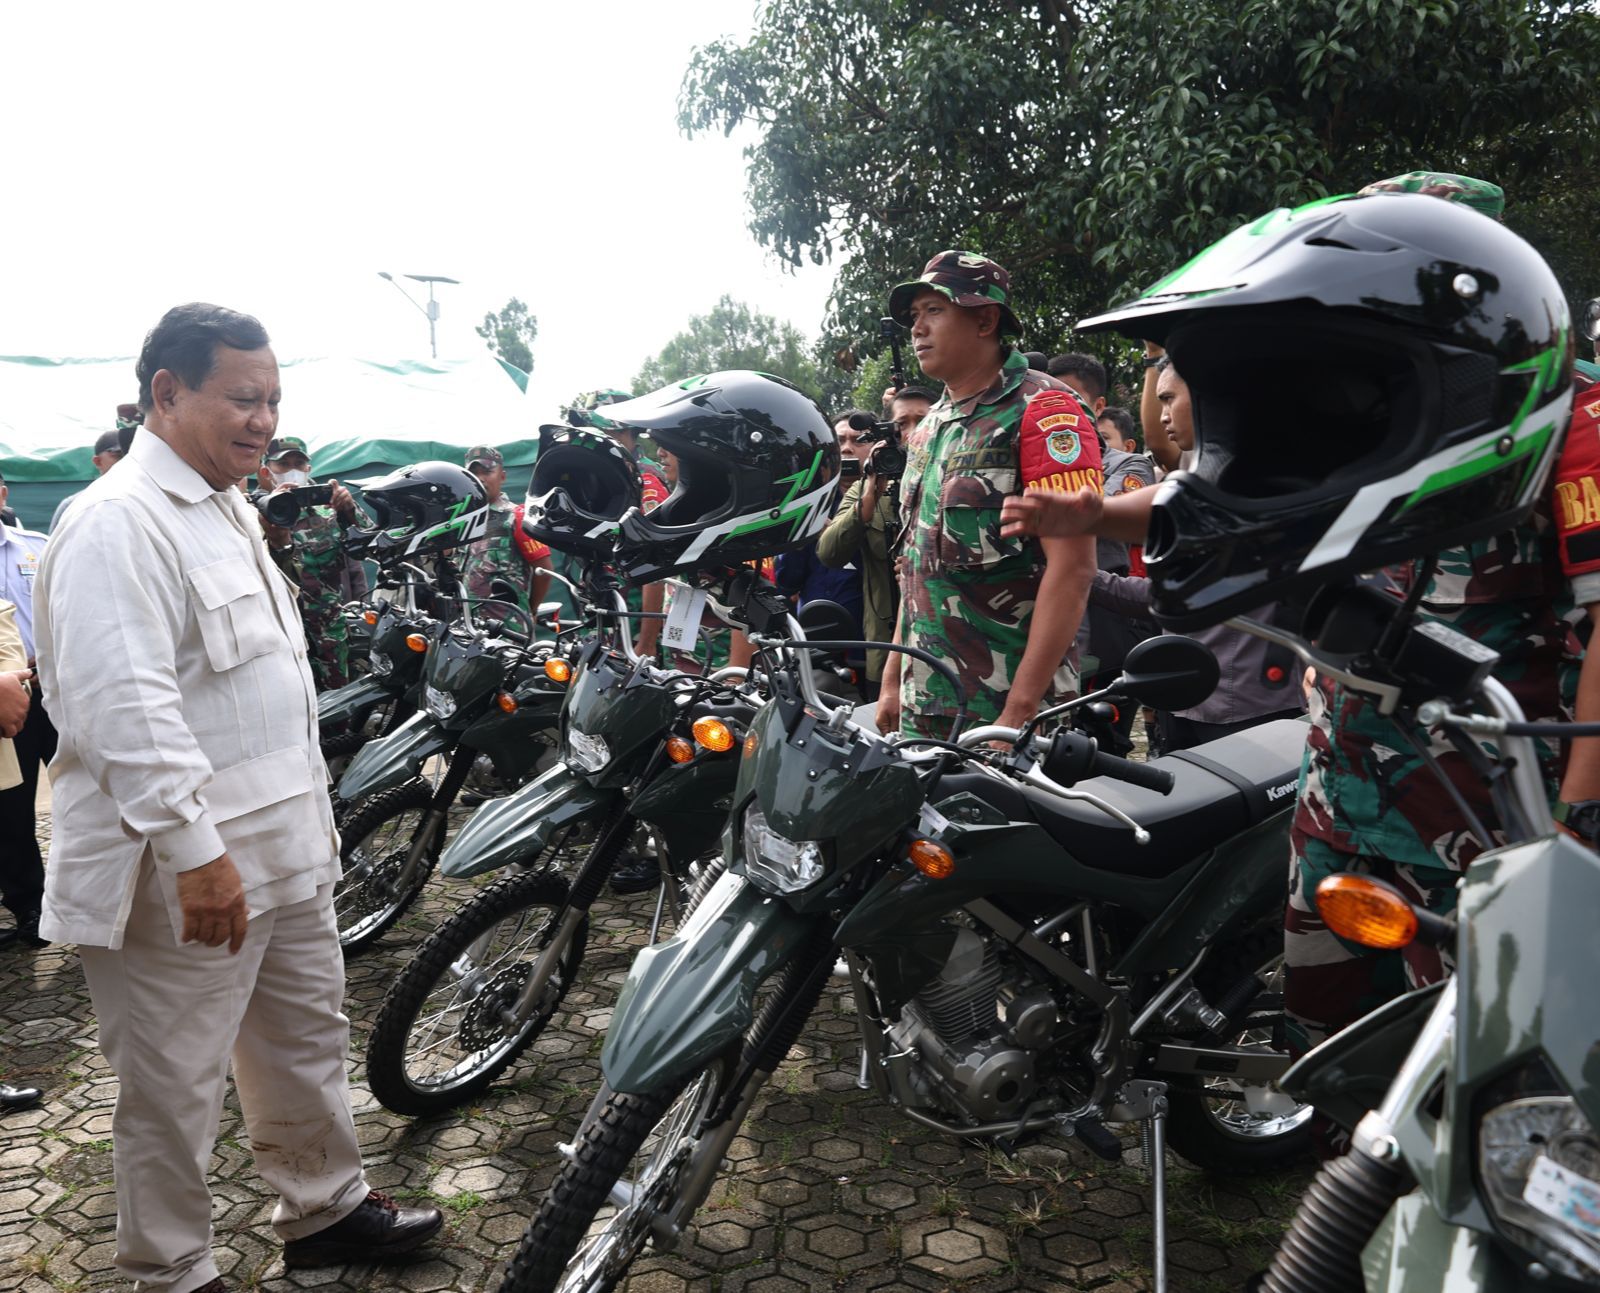 Menhan Pak Bowo menyerahkan 20 unit sepeda motor kepada Kodim 0608 Cianjur untuk membantu masyarakat yang terdampak gempa (Ashar/SinPo.id)